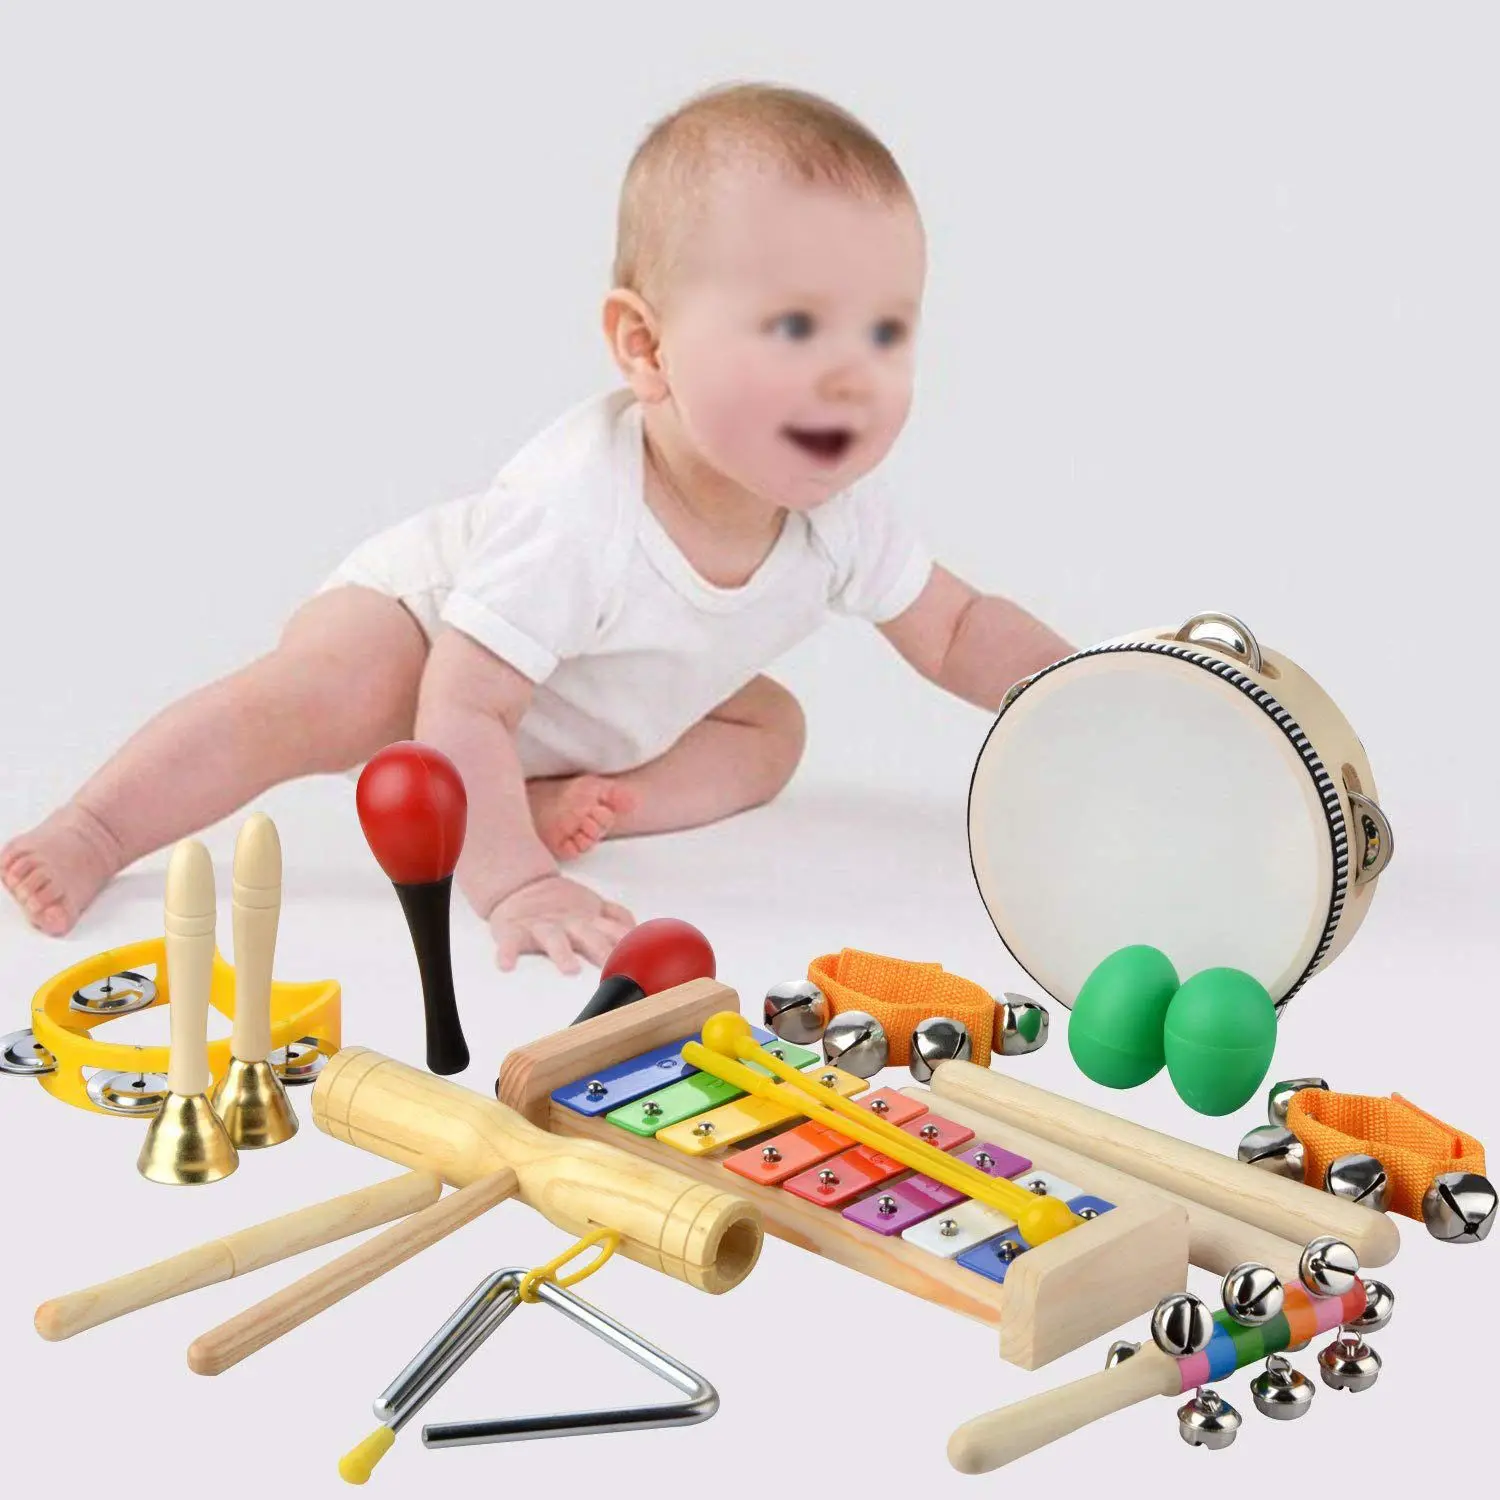 Музыкальные инструменты набор, 20 шт. деревянная перкуссия игрушка ритм и Музыка образование группа набор весело игрушки для малышей Best